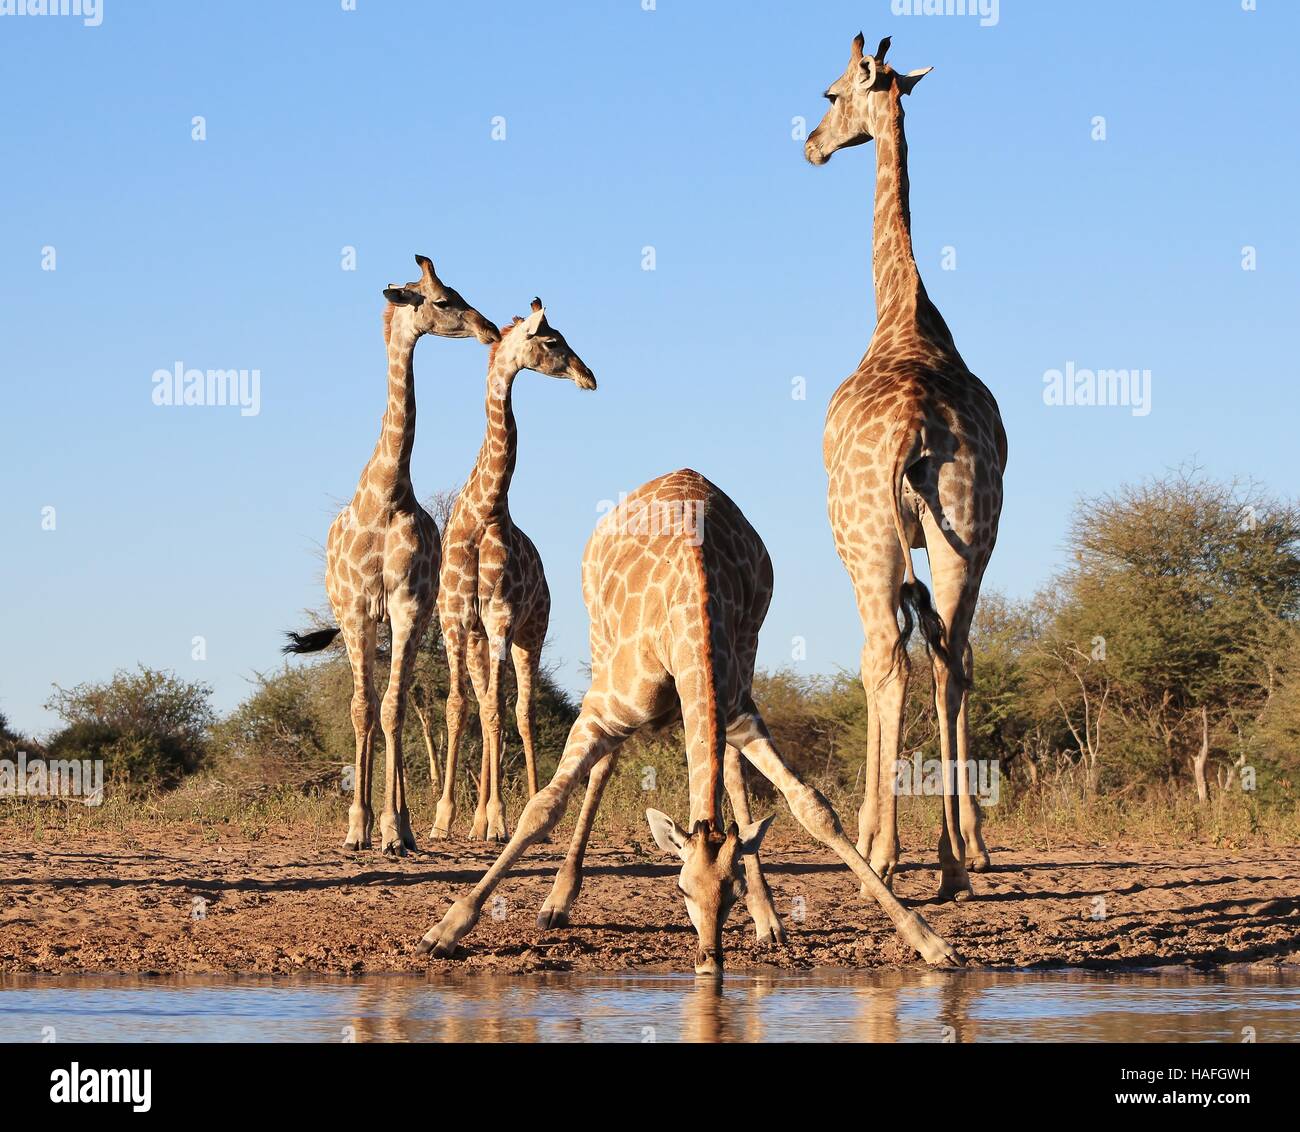 Giraffe - afrikanische Tierwelt-Hintergrund - Akrobatik in Natur lustig Stockfoto